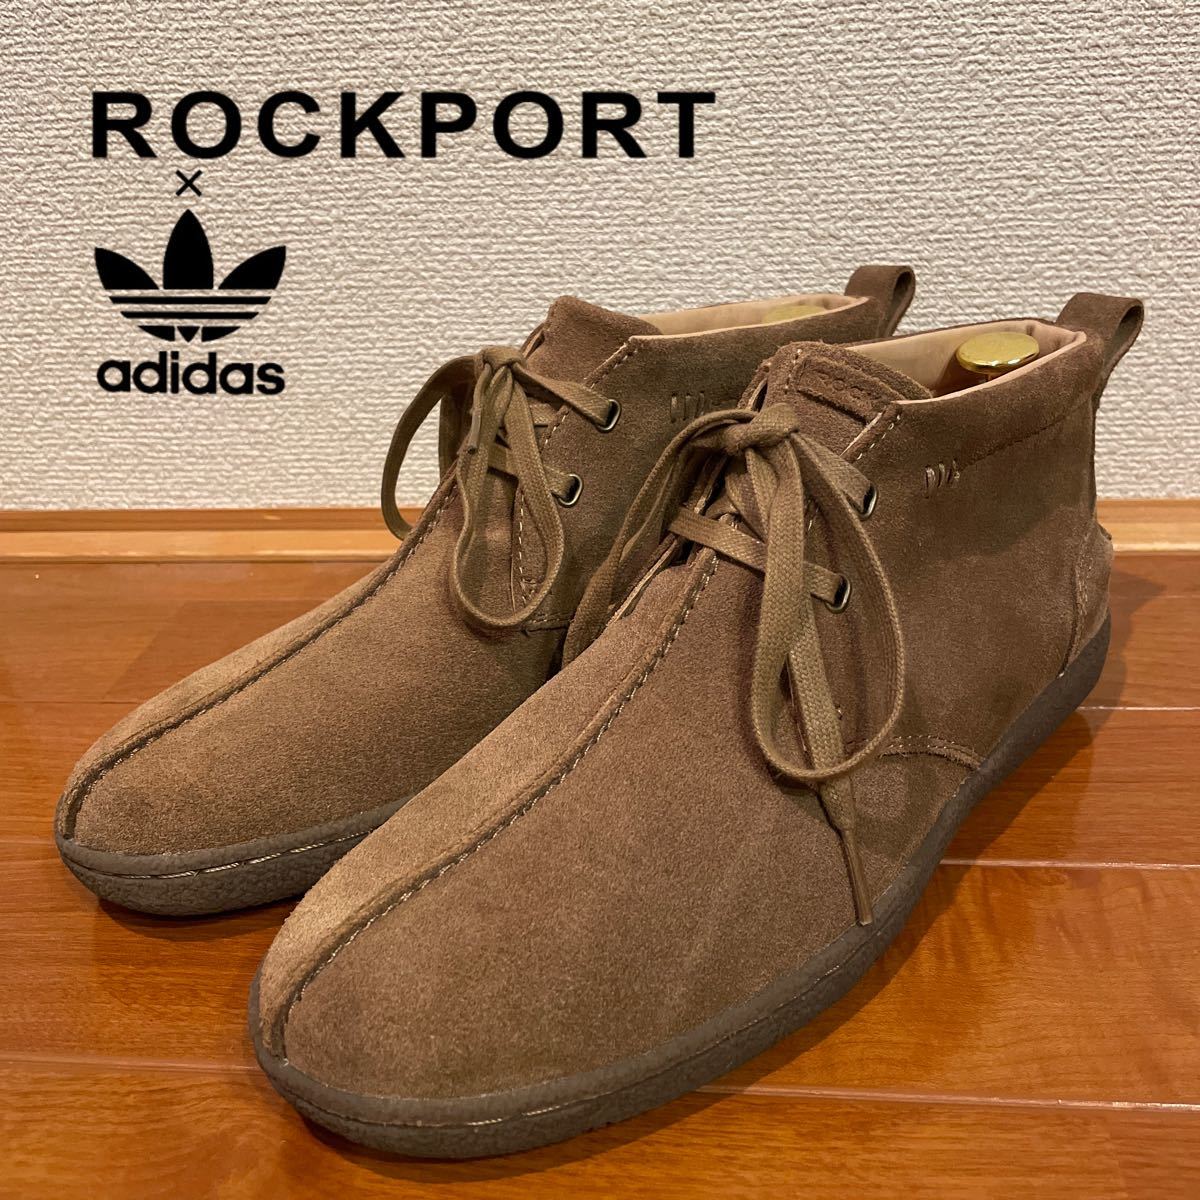 3年保証 即日出荷 ROCKPORT /adidas スエードシューズ ブーツ